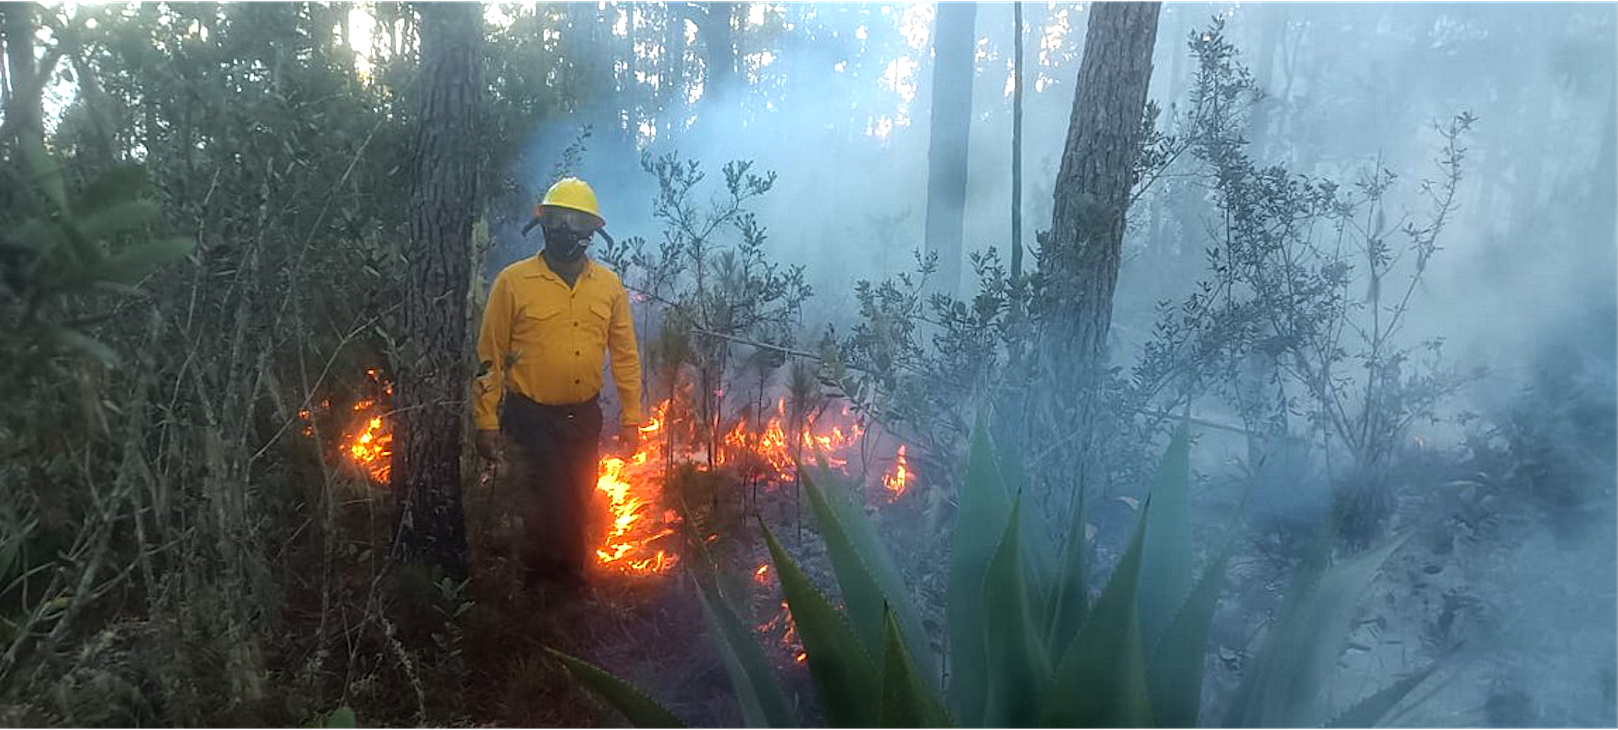 REPÚBLICA DOMINICANA: Bomberos forestales extinguen 11 incendios en diferentes puntos del país